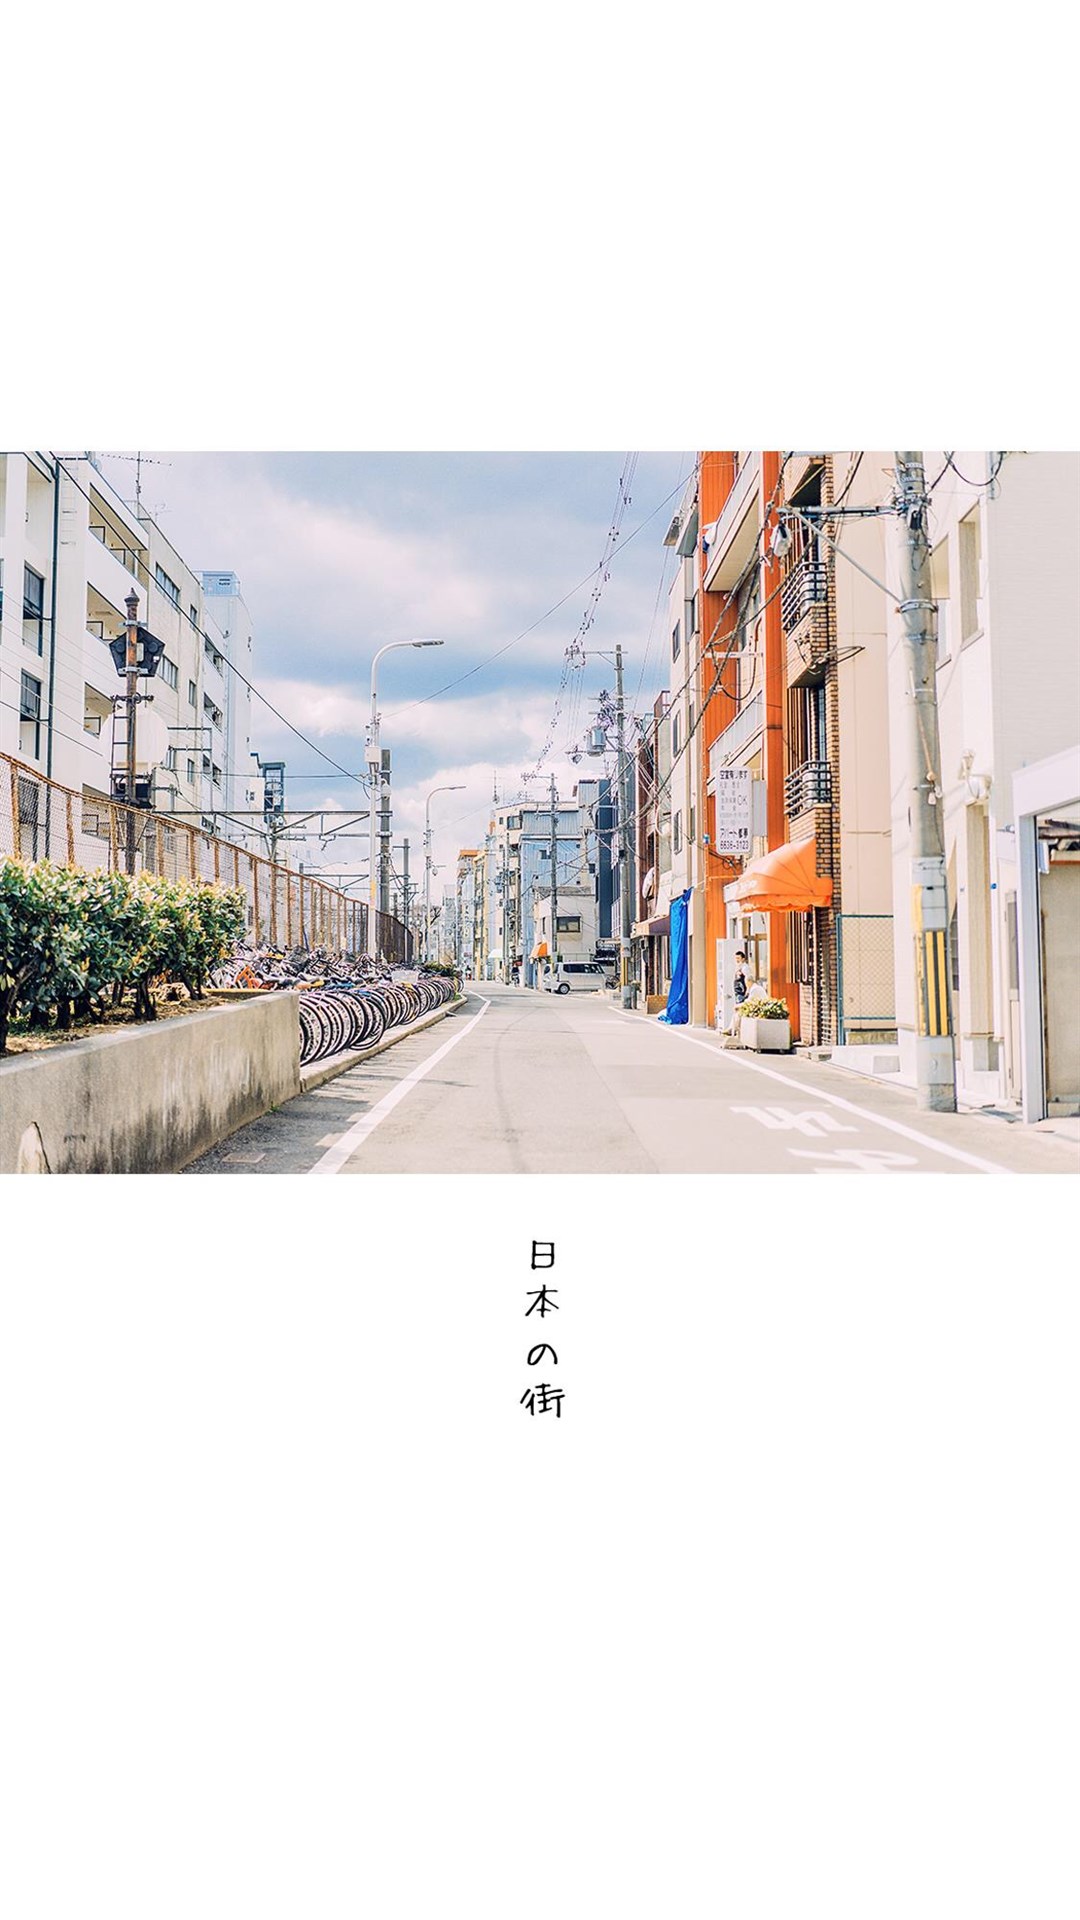 街景图片素材 清新简约日本街景风光手机壁纸(6)